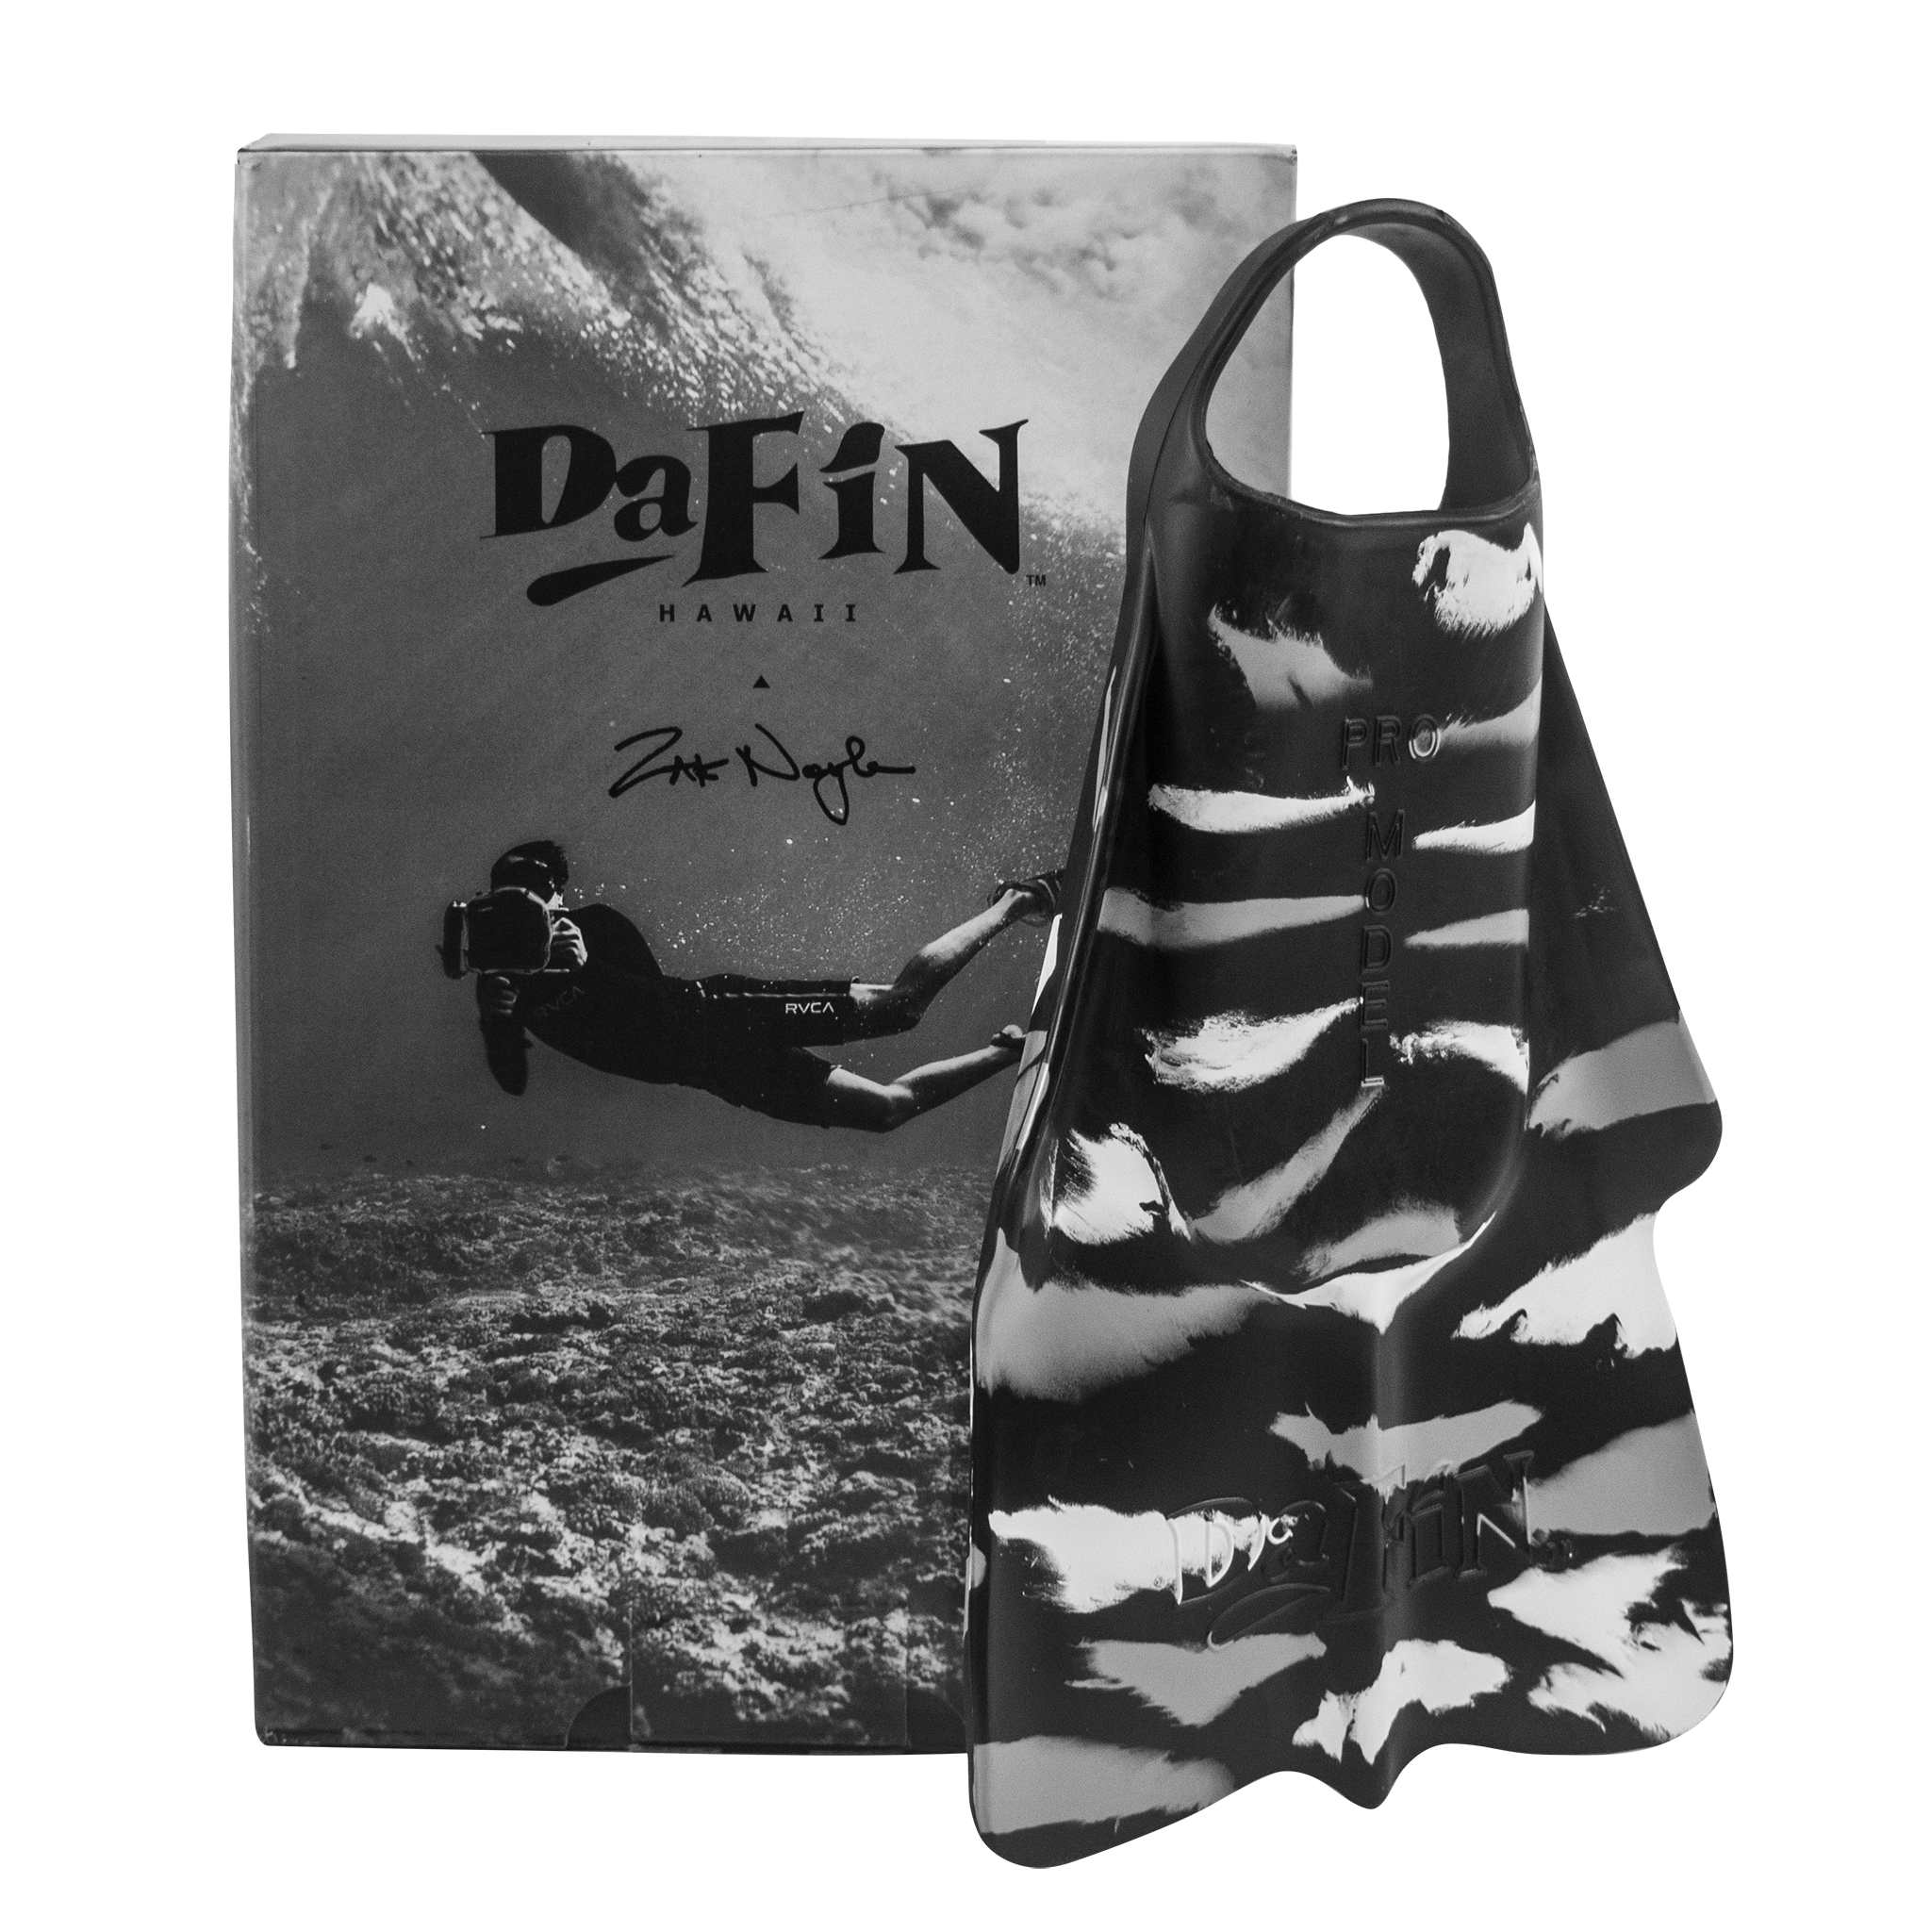 DaFiN Swimfins Australia - DaFin Flippers Zak Noyle Black / White